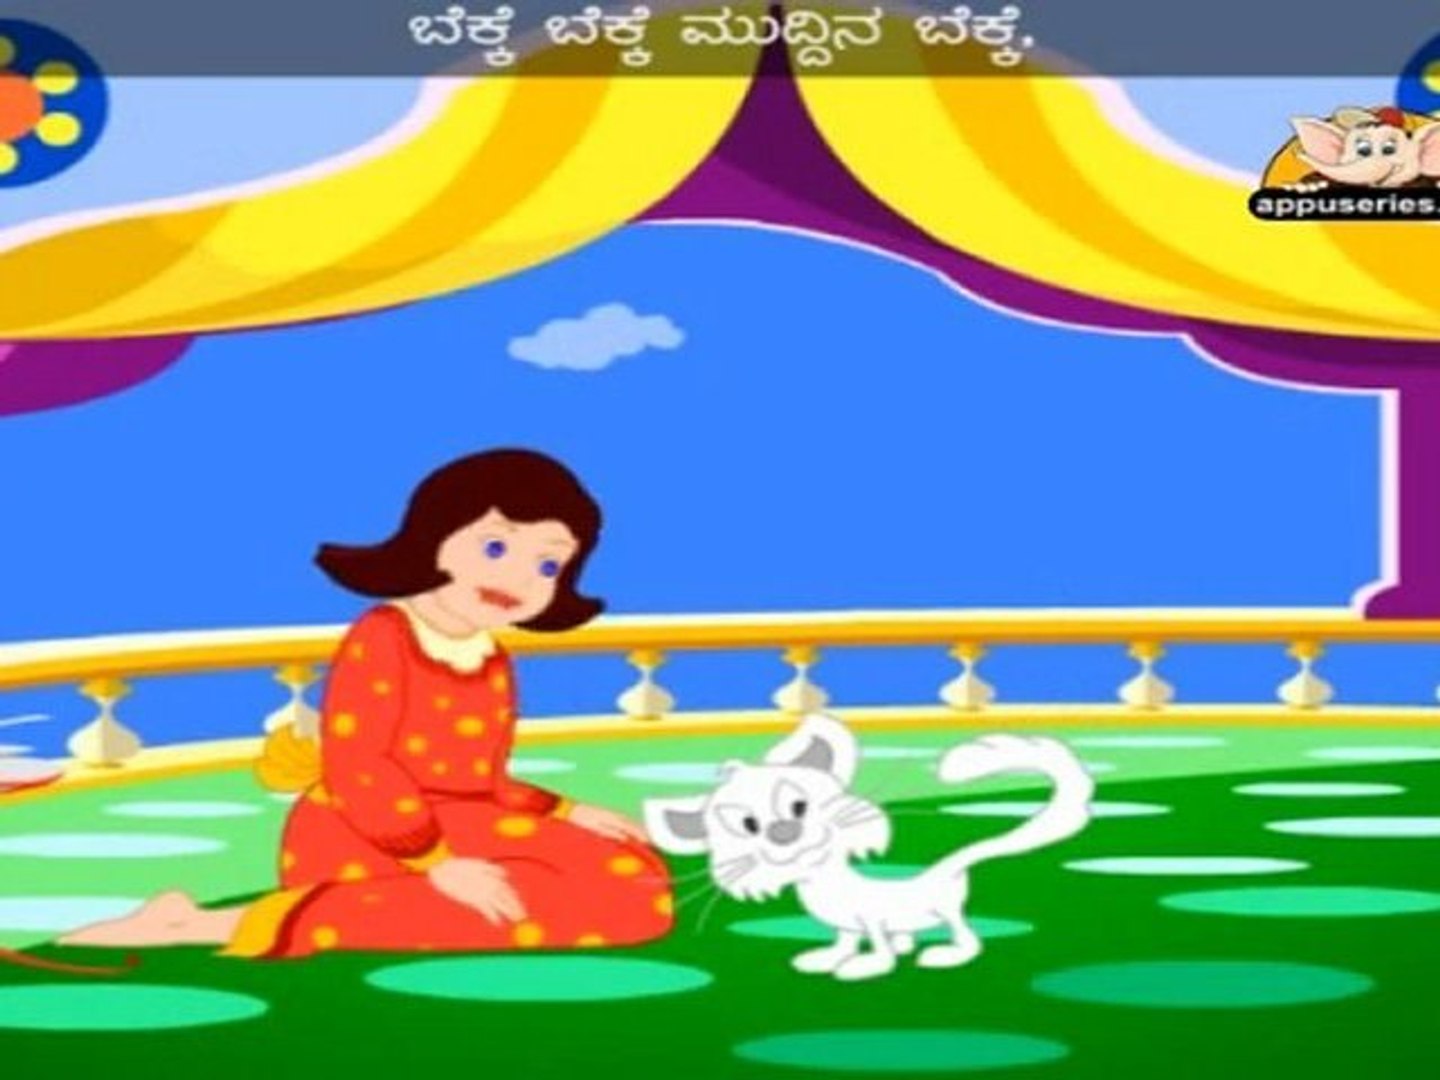 Mudhina Bekke (Pussycat) - Nursery Rhyme with Lyrics in Kannada - video  Dailymotion